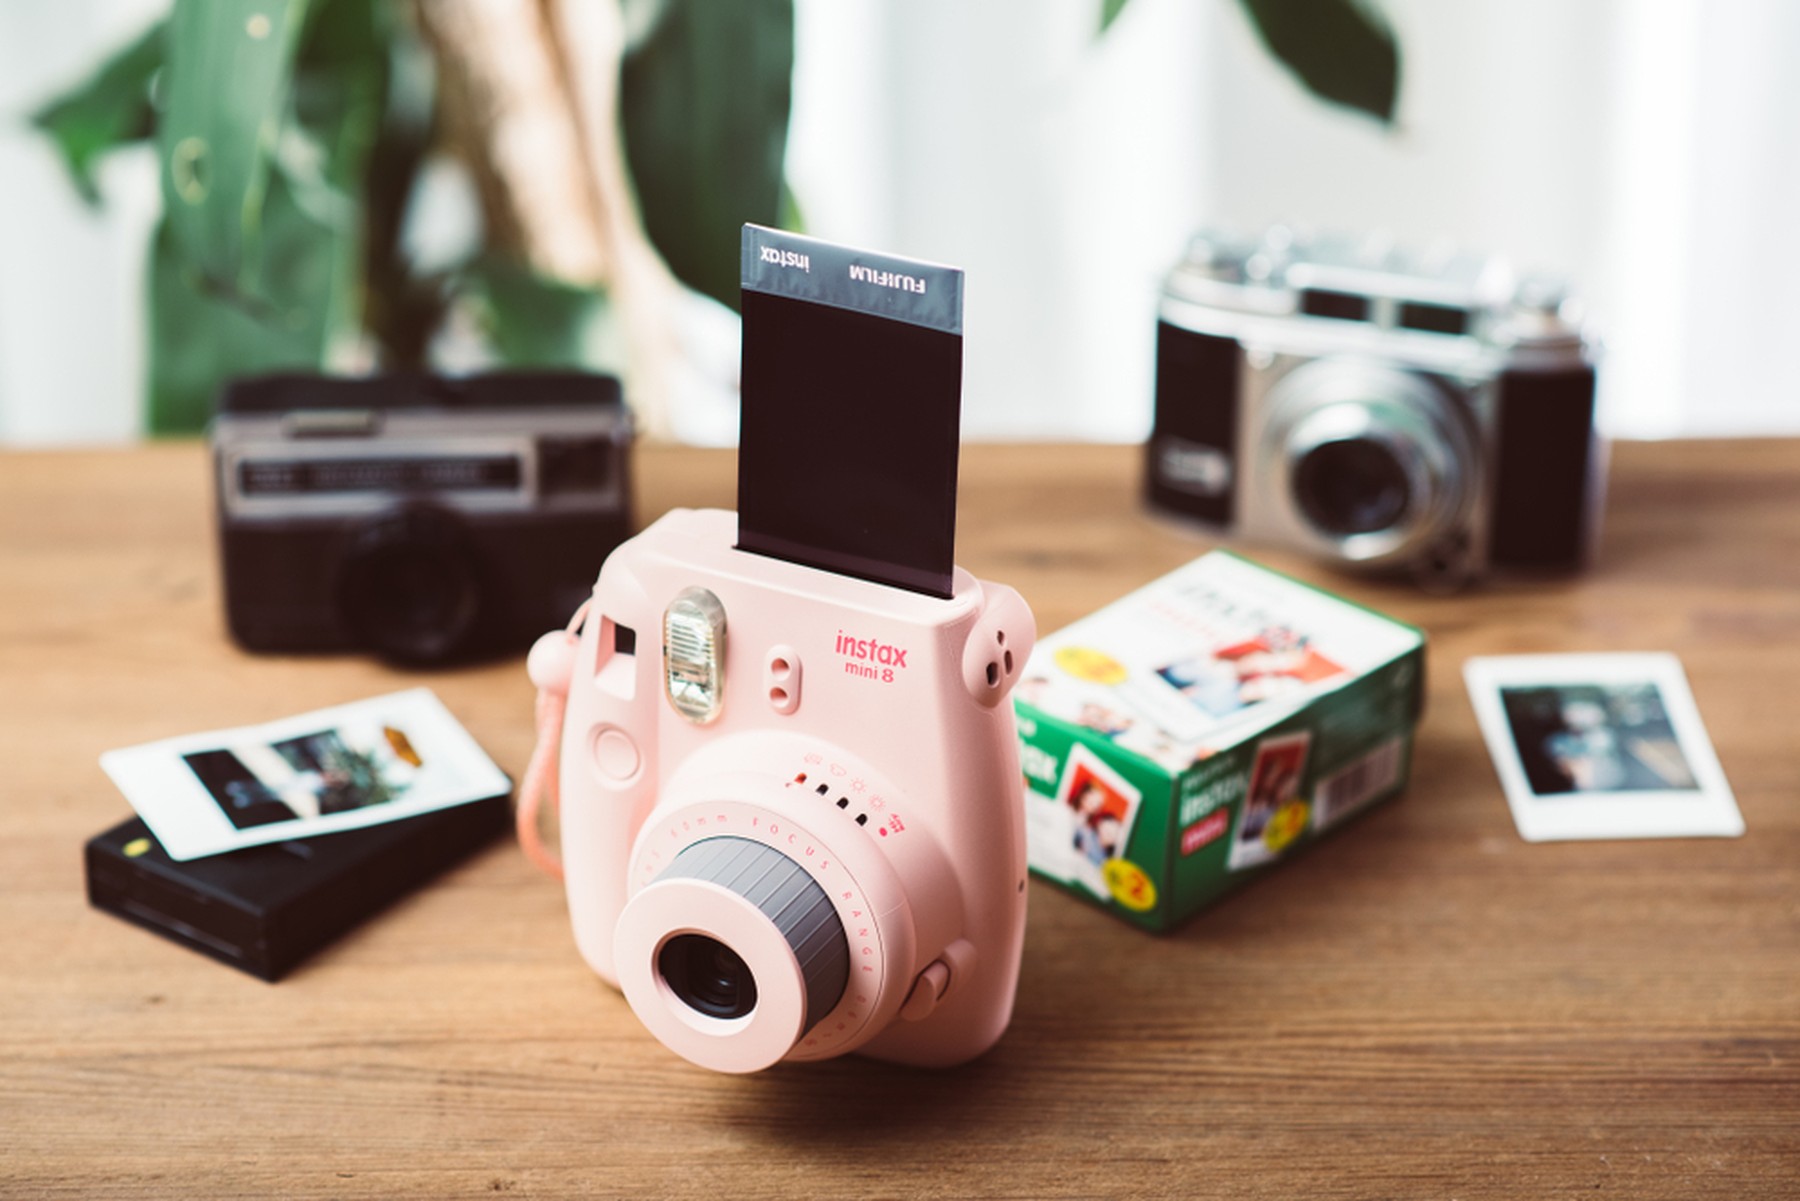 Cámara Fujifilm Instax mini 8 rosa sobre una mesa de madera. Detrás hay otras cámaras.